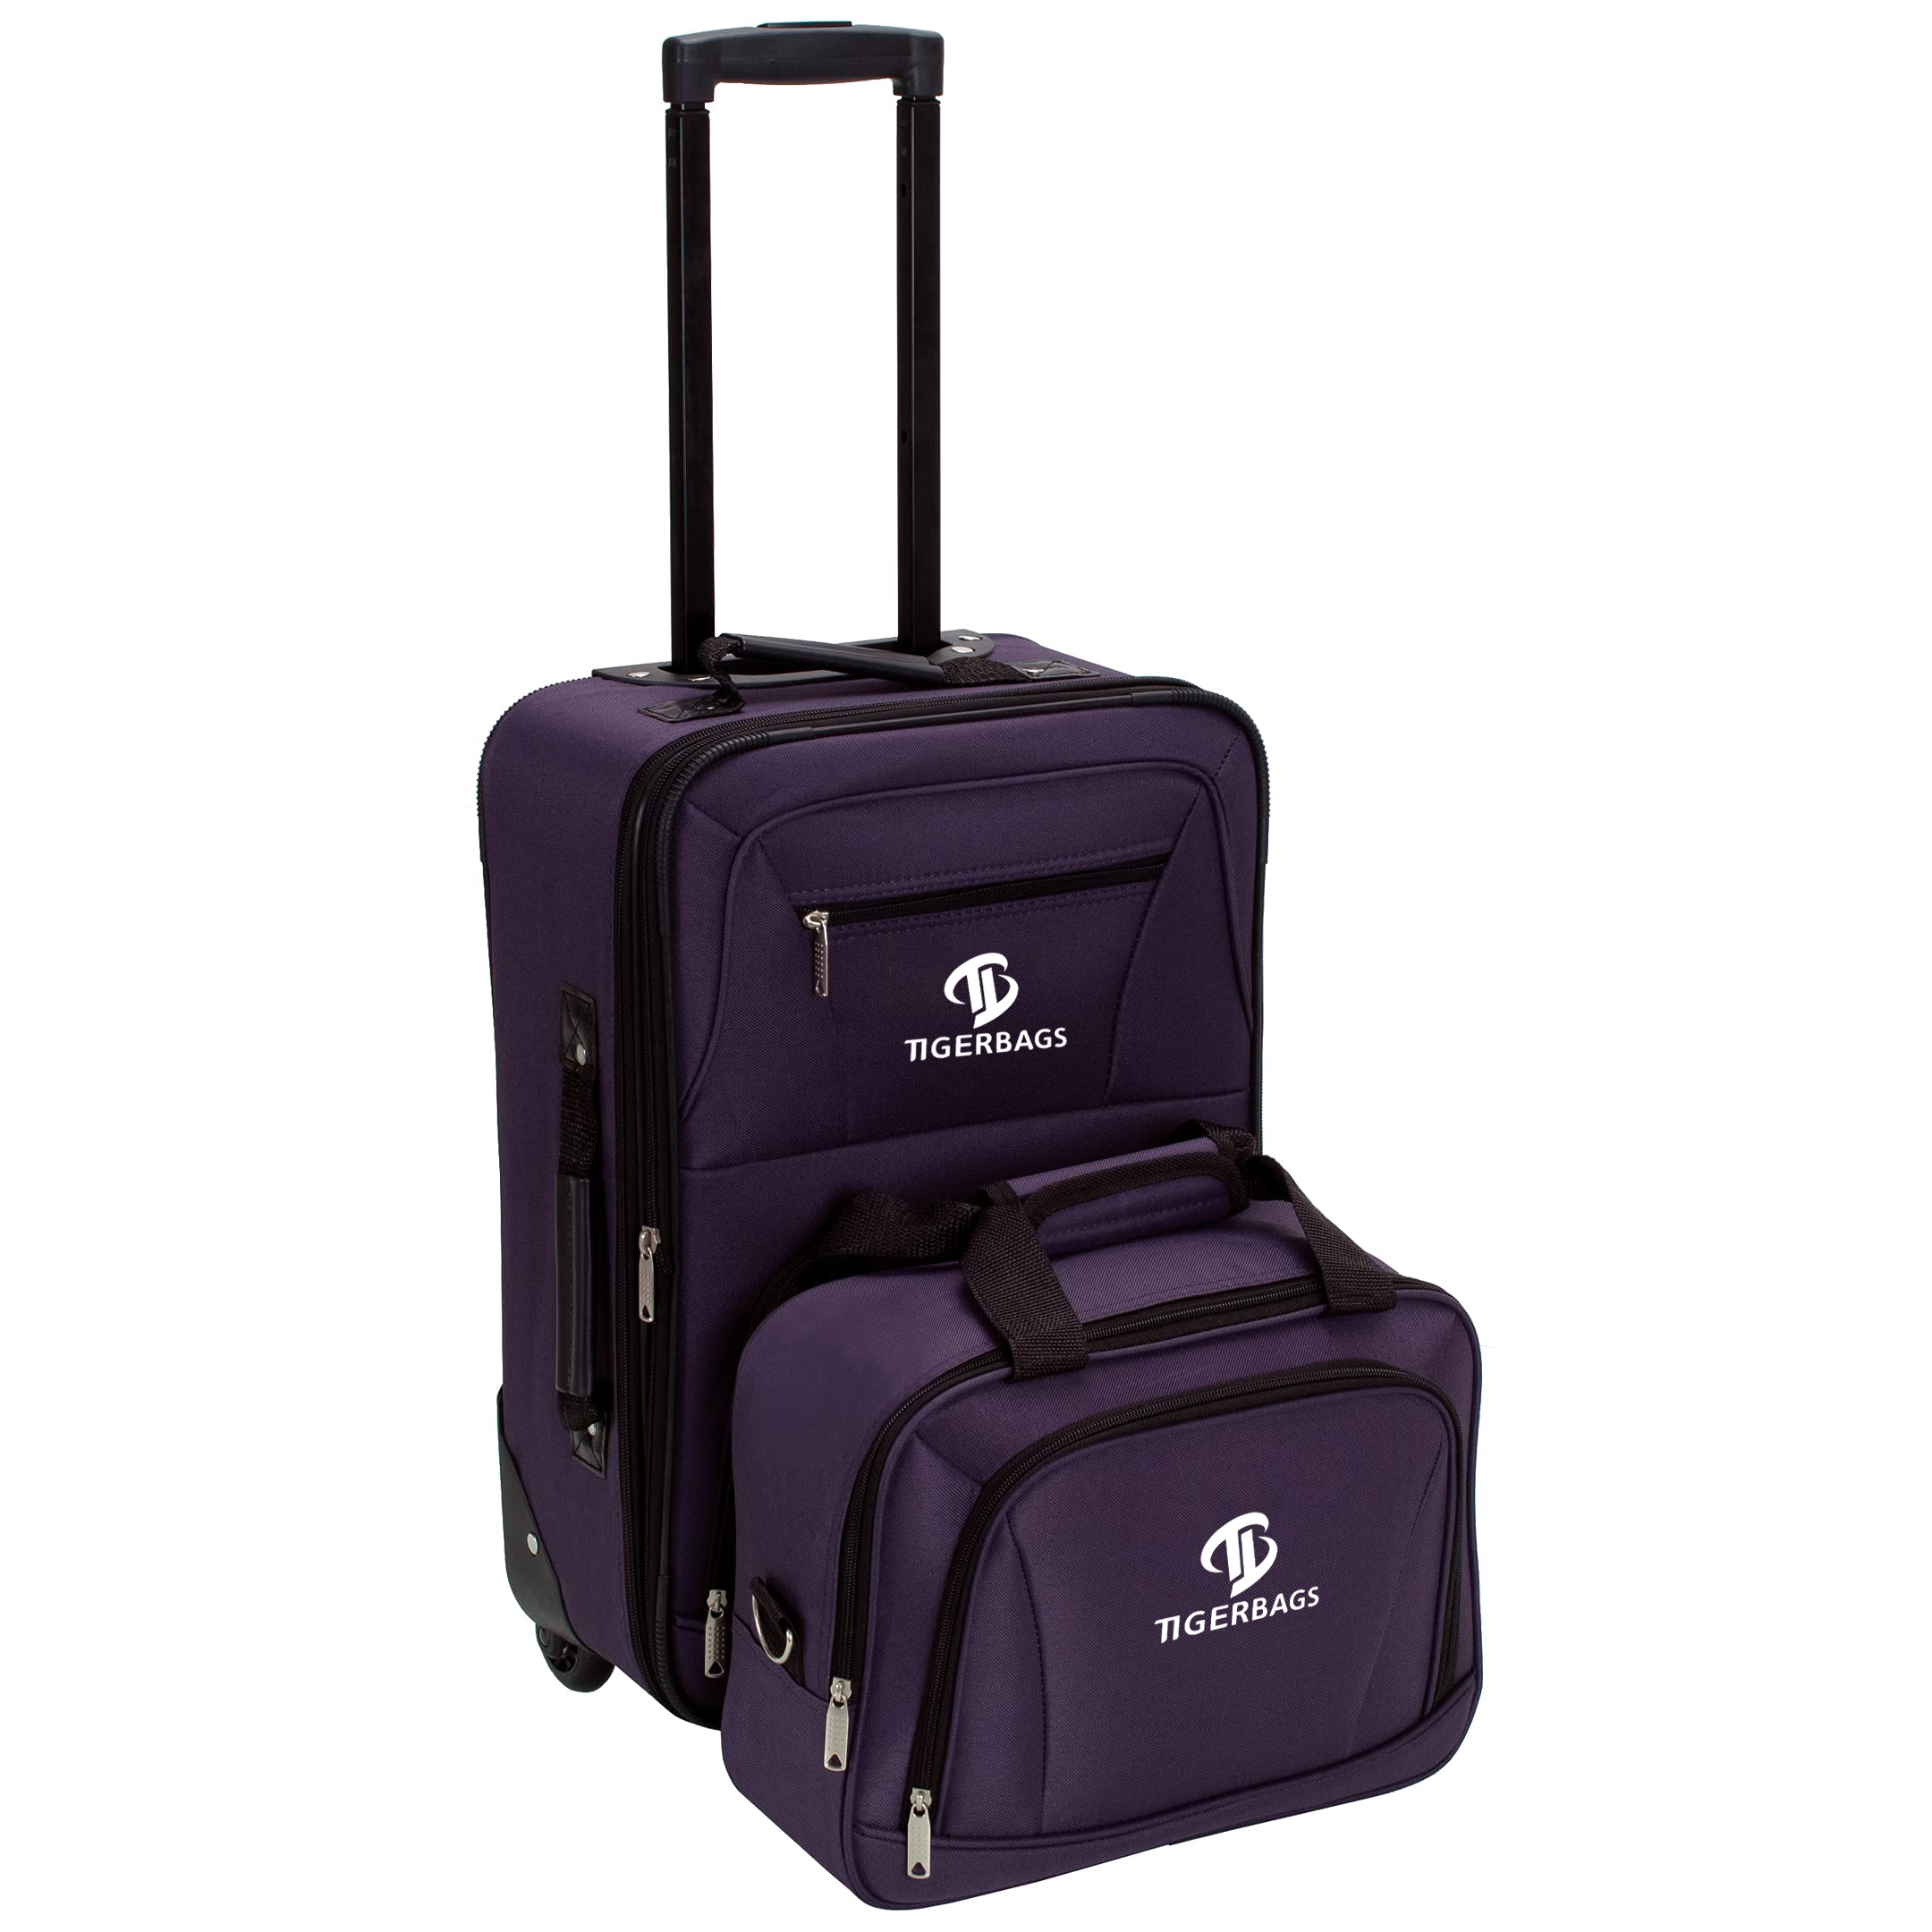 Muoti Softside upright matkalaukkusetti violetti.Muodikas pehmeänpuoleinen pystylaukkusarja, violetti